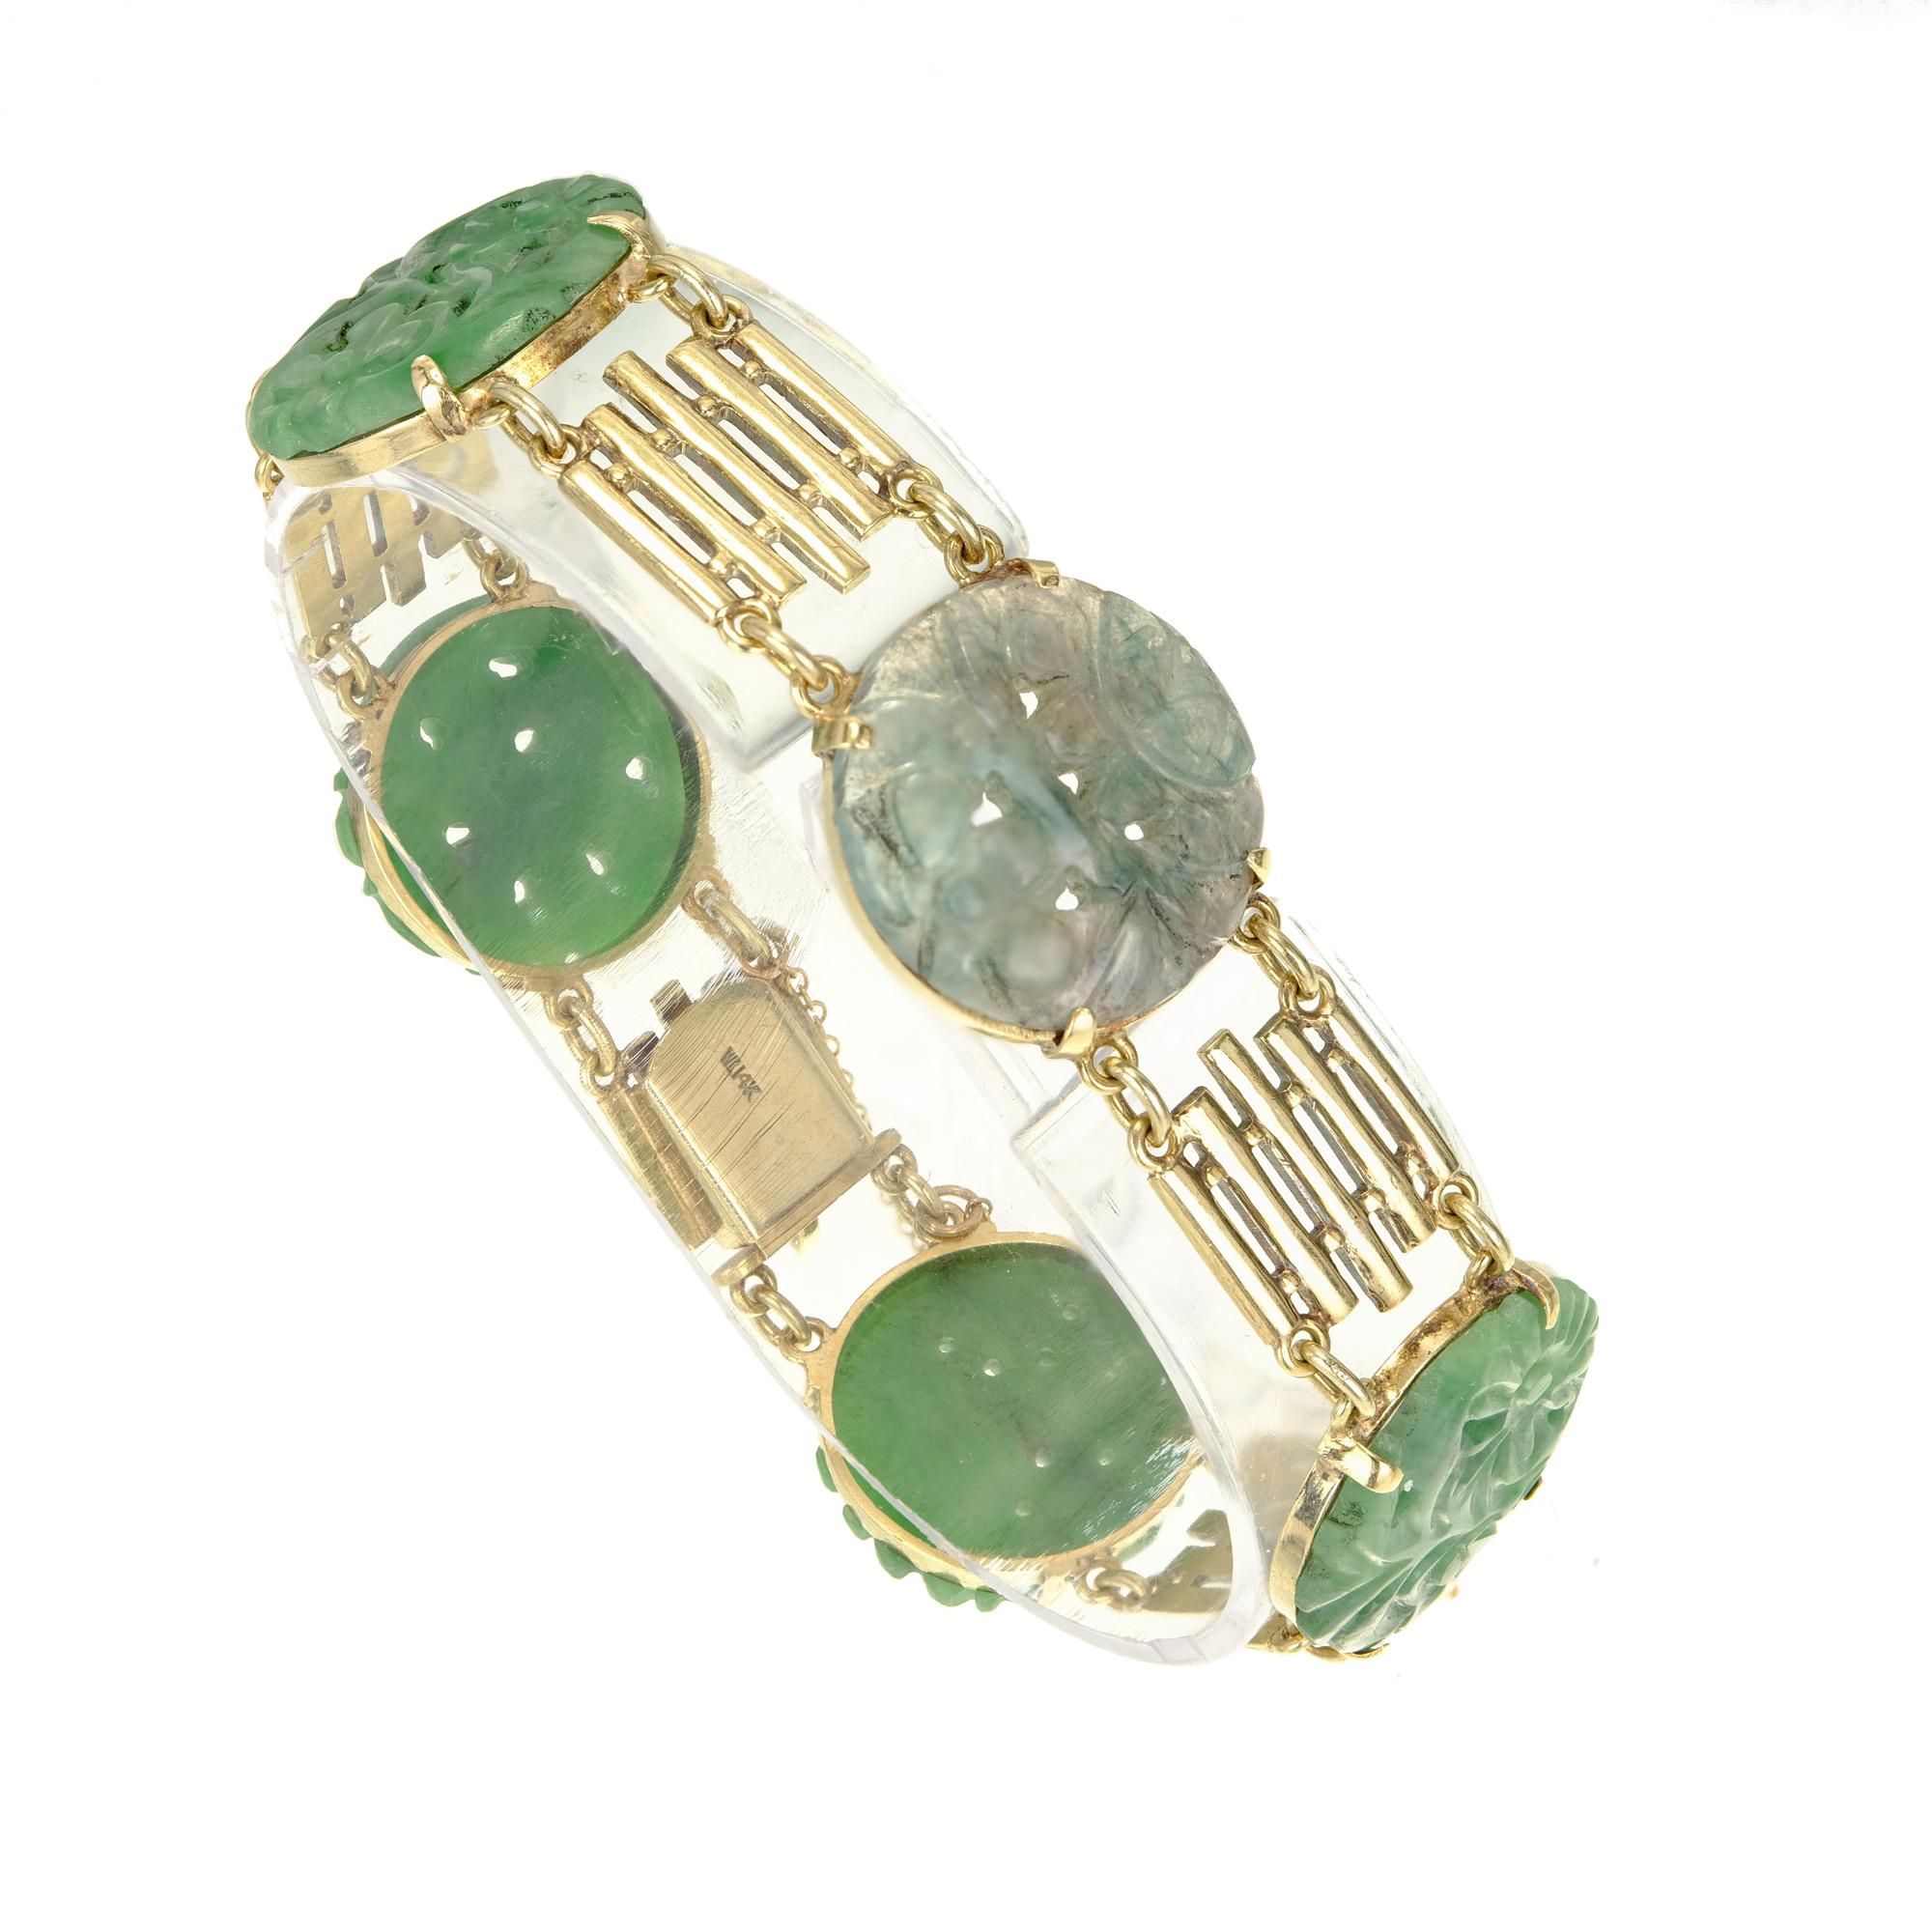 Bracelet de Jade Art Déco des années 1940 en or légèrement vert avec de la Jadeite ronde certifiée non traitée.

5 vert 18.7mm x 2.0mm rond sculpté Jadeite Jade, naturel, pas d'améliorations et pas de traitements, certificat GIA #2205069196
Longueur